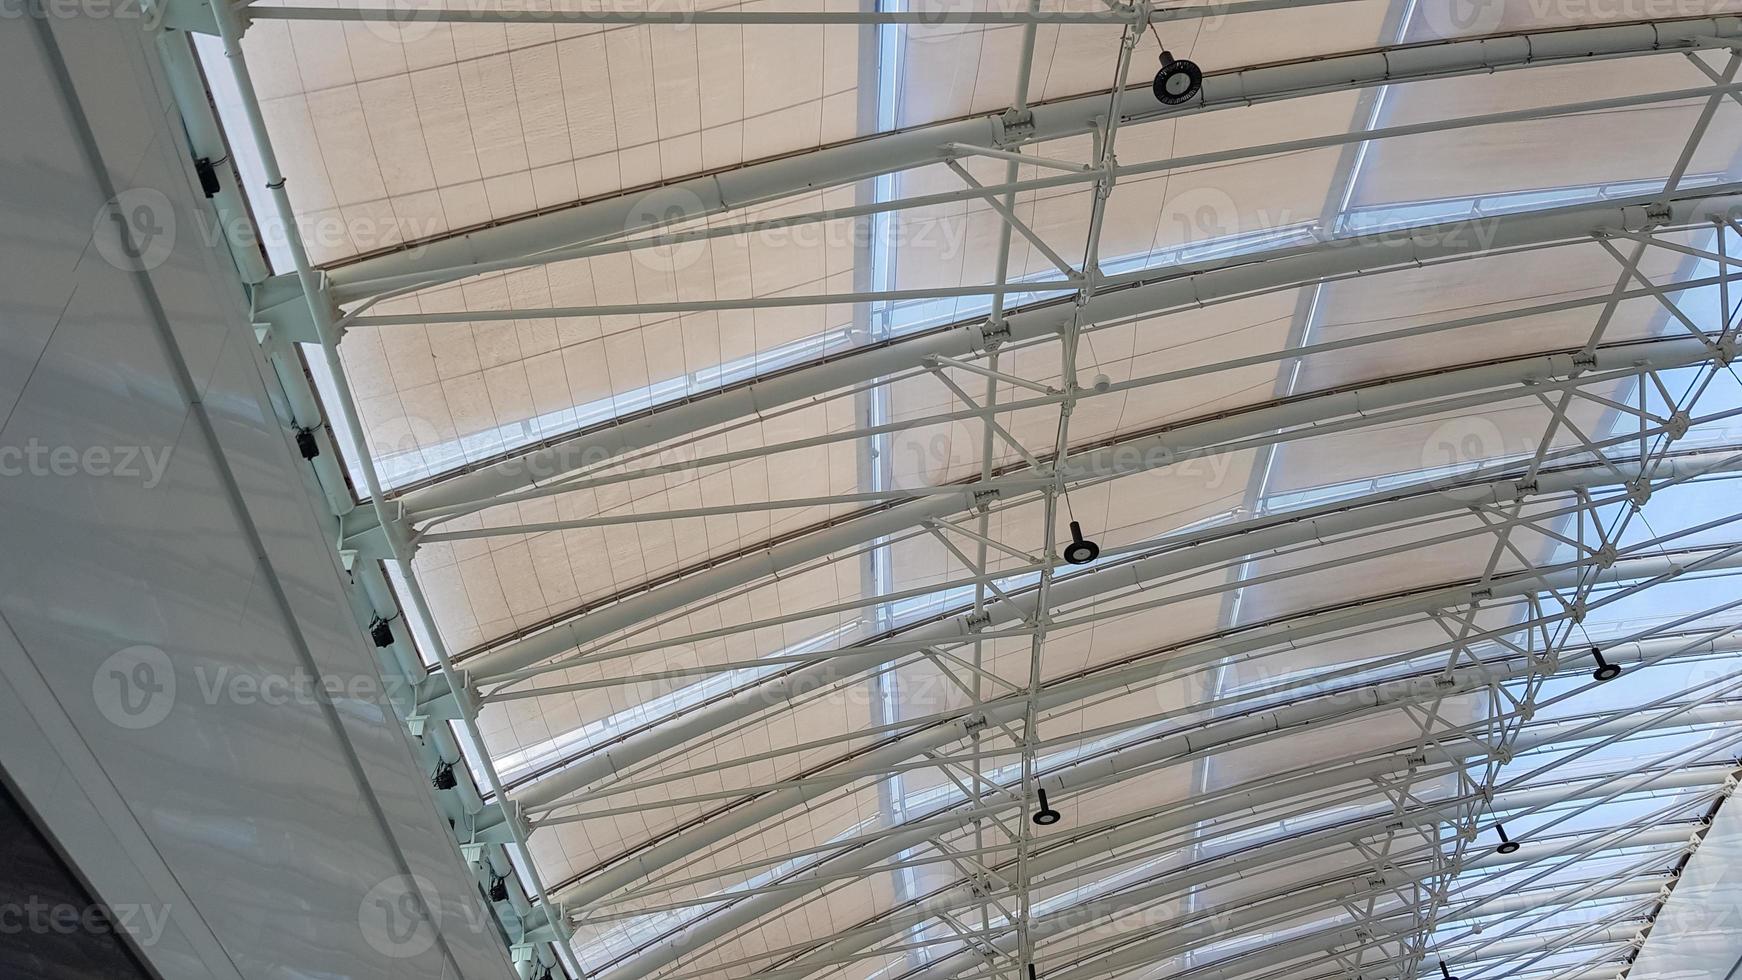 geschwungenes Dach mit Fenstern eines großen Einkaufszentrums im Innenbereich. moderne Metall-Glas-Deckenkonstruktion. foto